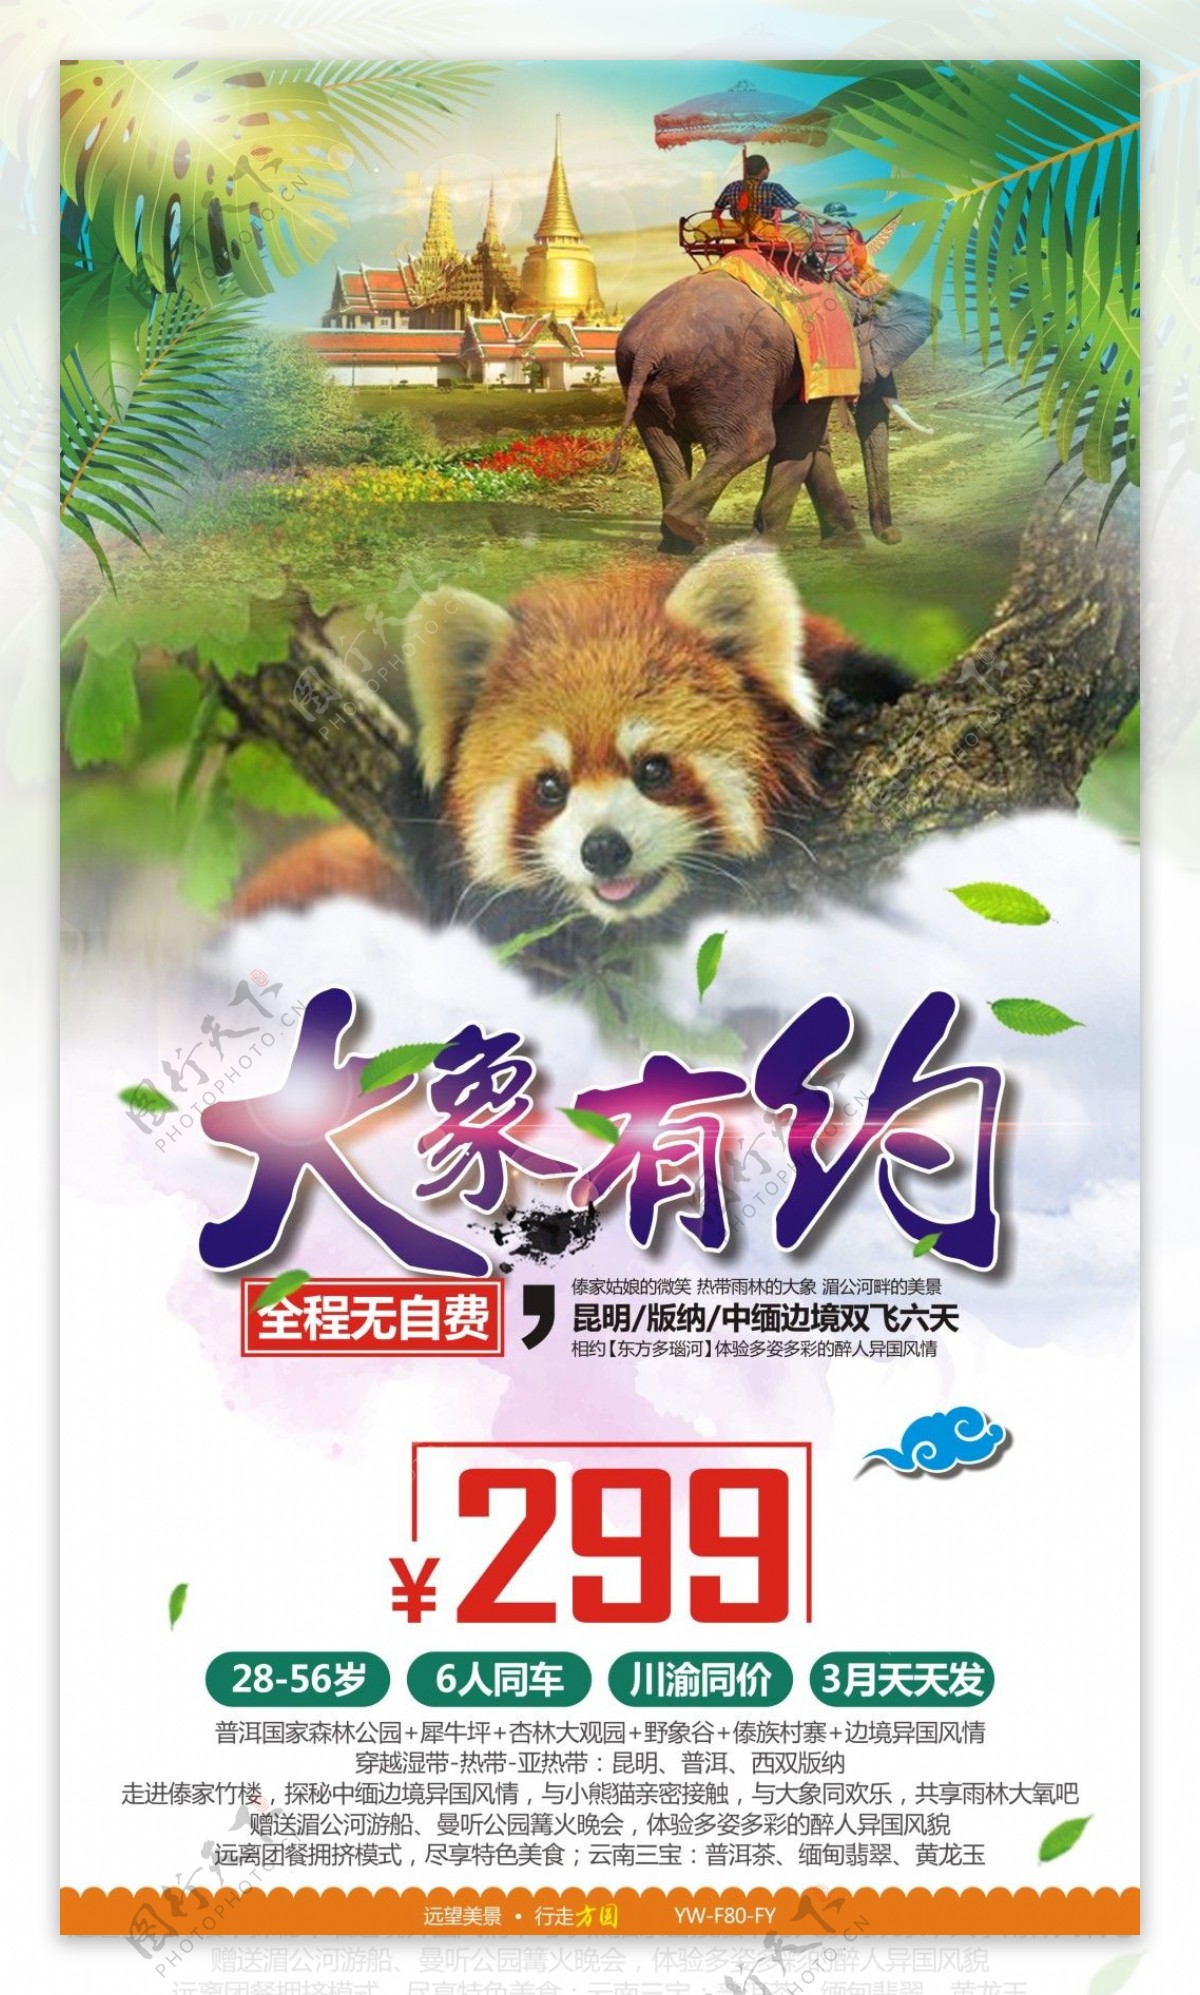 大象有约云南版纳旅游广告宣传图